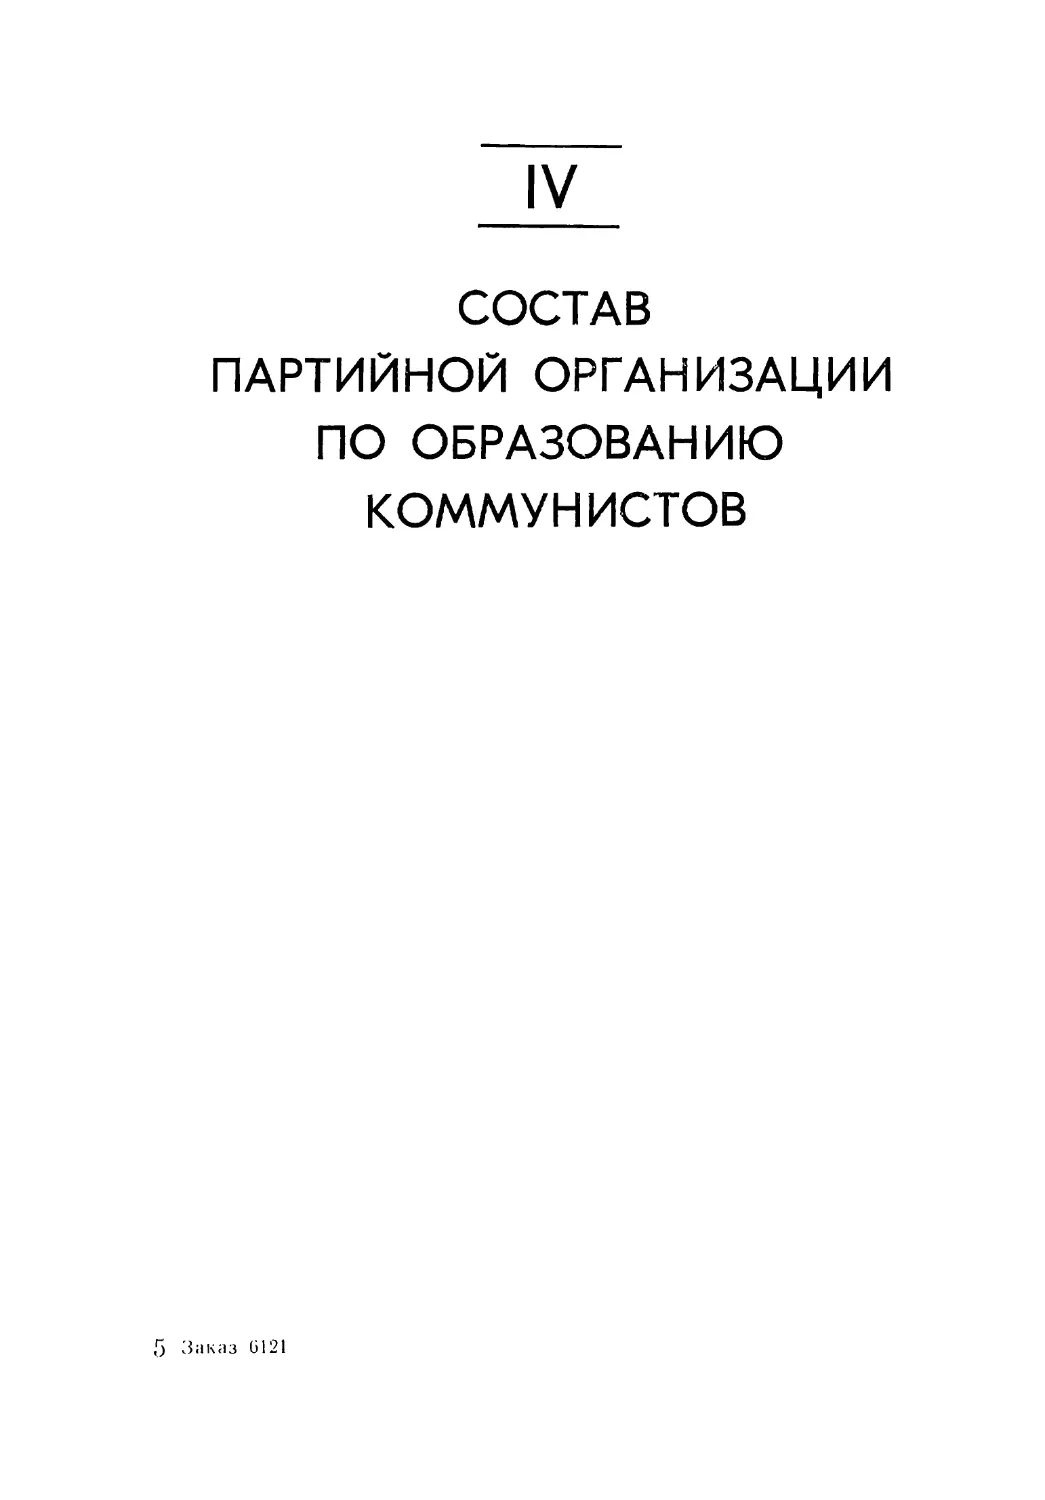 IV. Состав партийной организации по образованию коммунистов